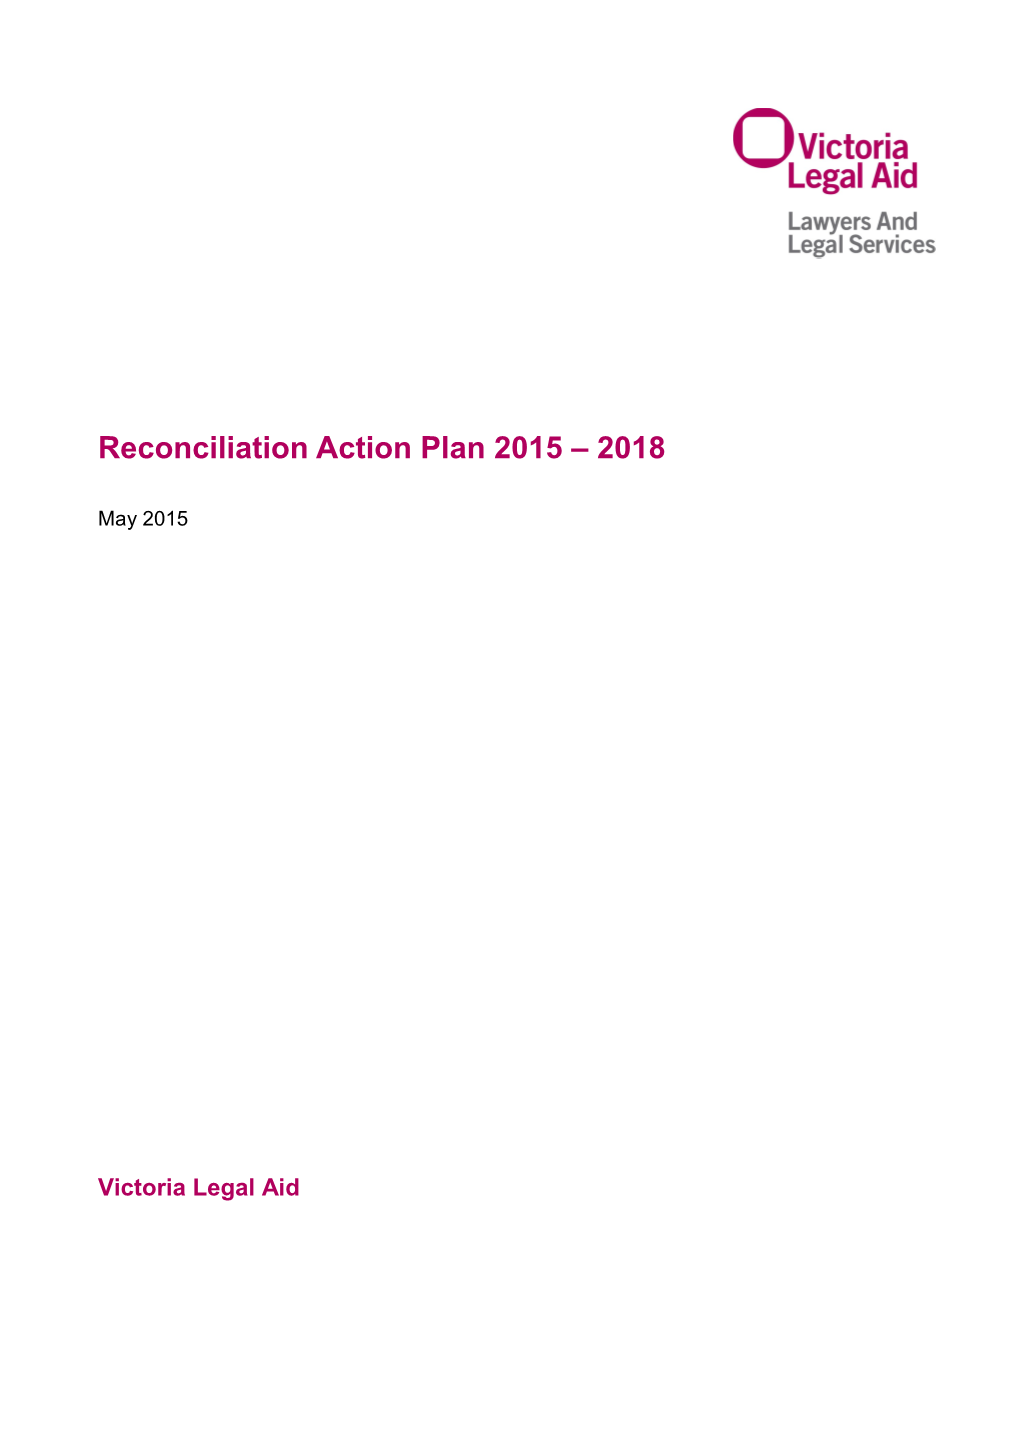 VLA Reconciliation Action Plan 2015 - 2018